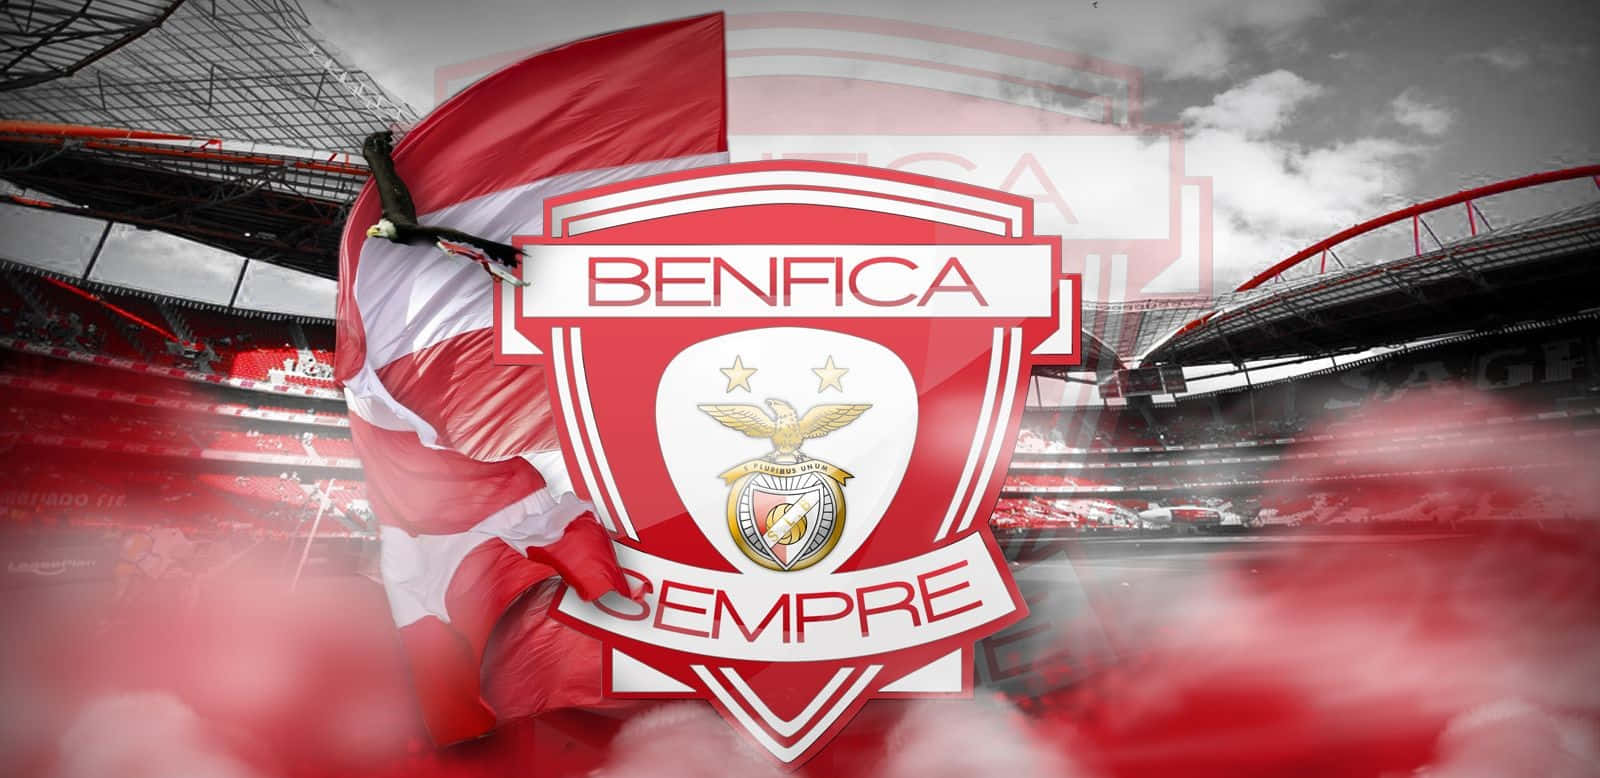 S L Benfica Stadiumand Emblem Wallpaper